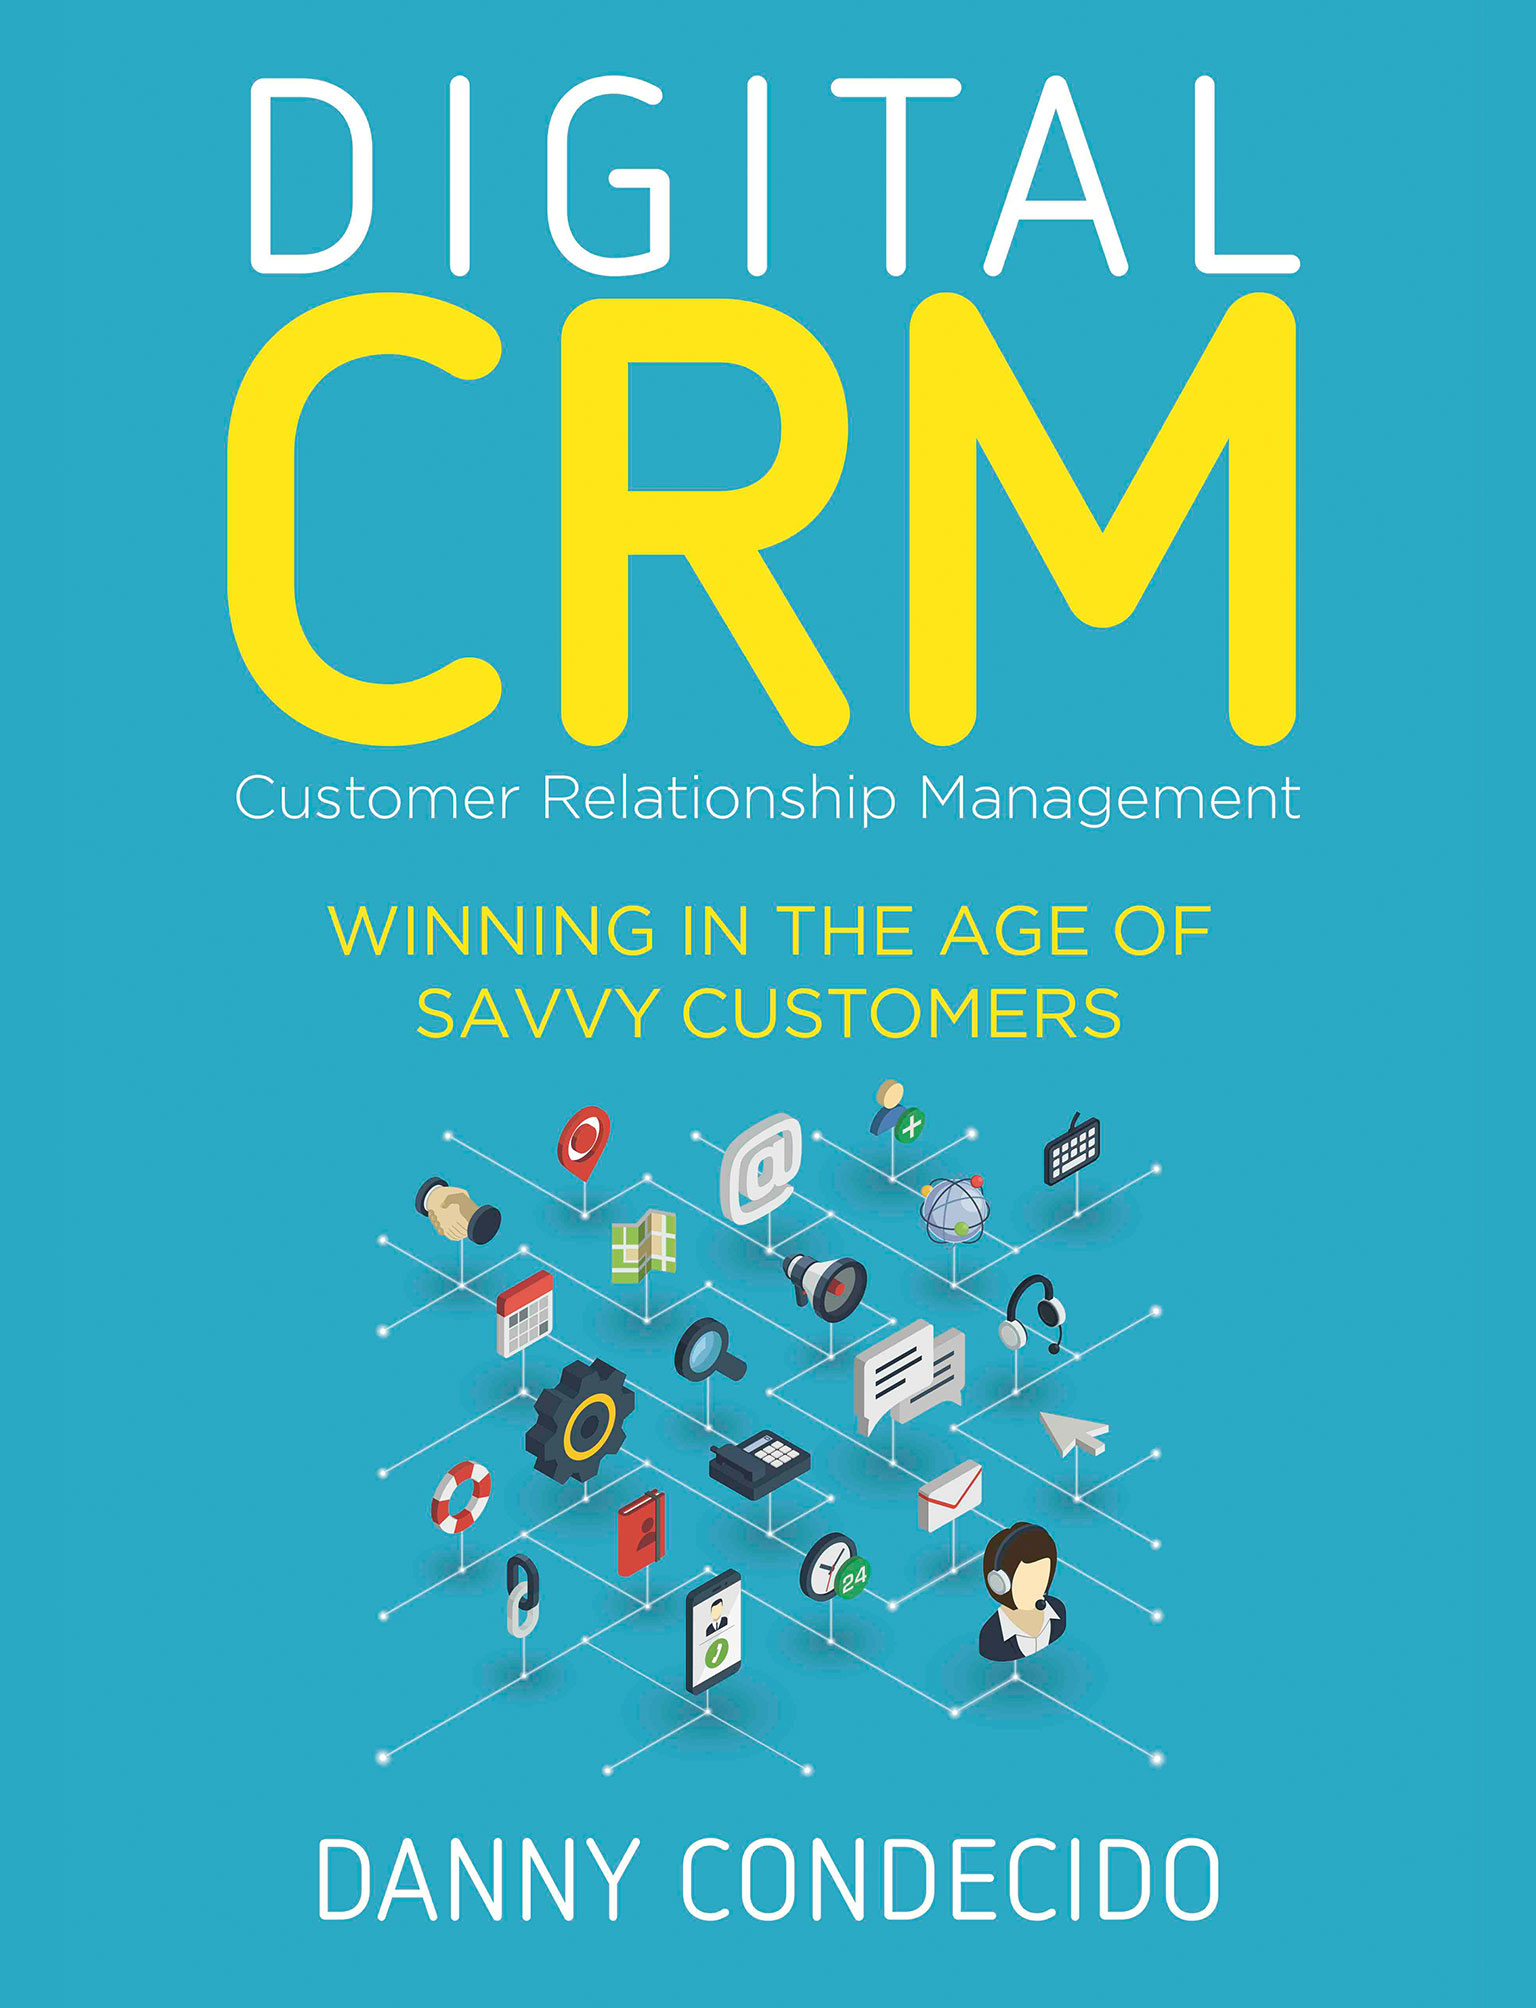 Digital CRM | Customer Relationship Management